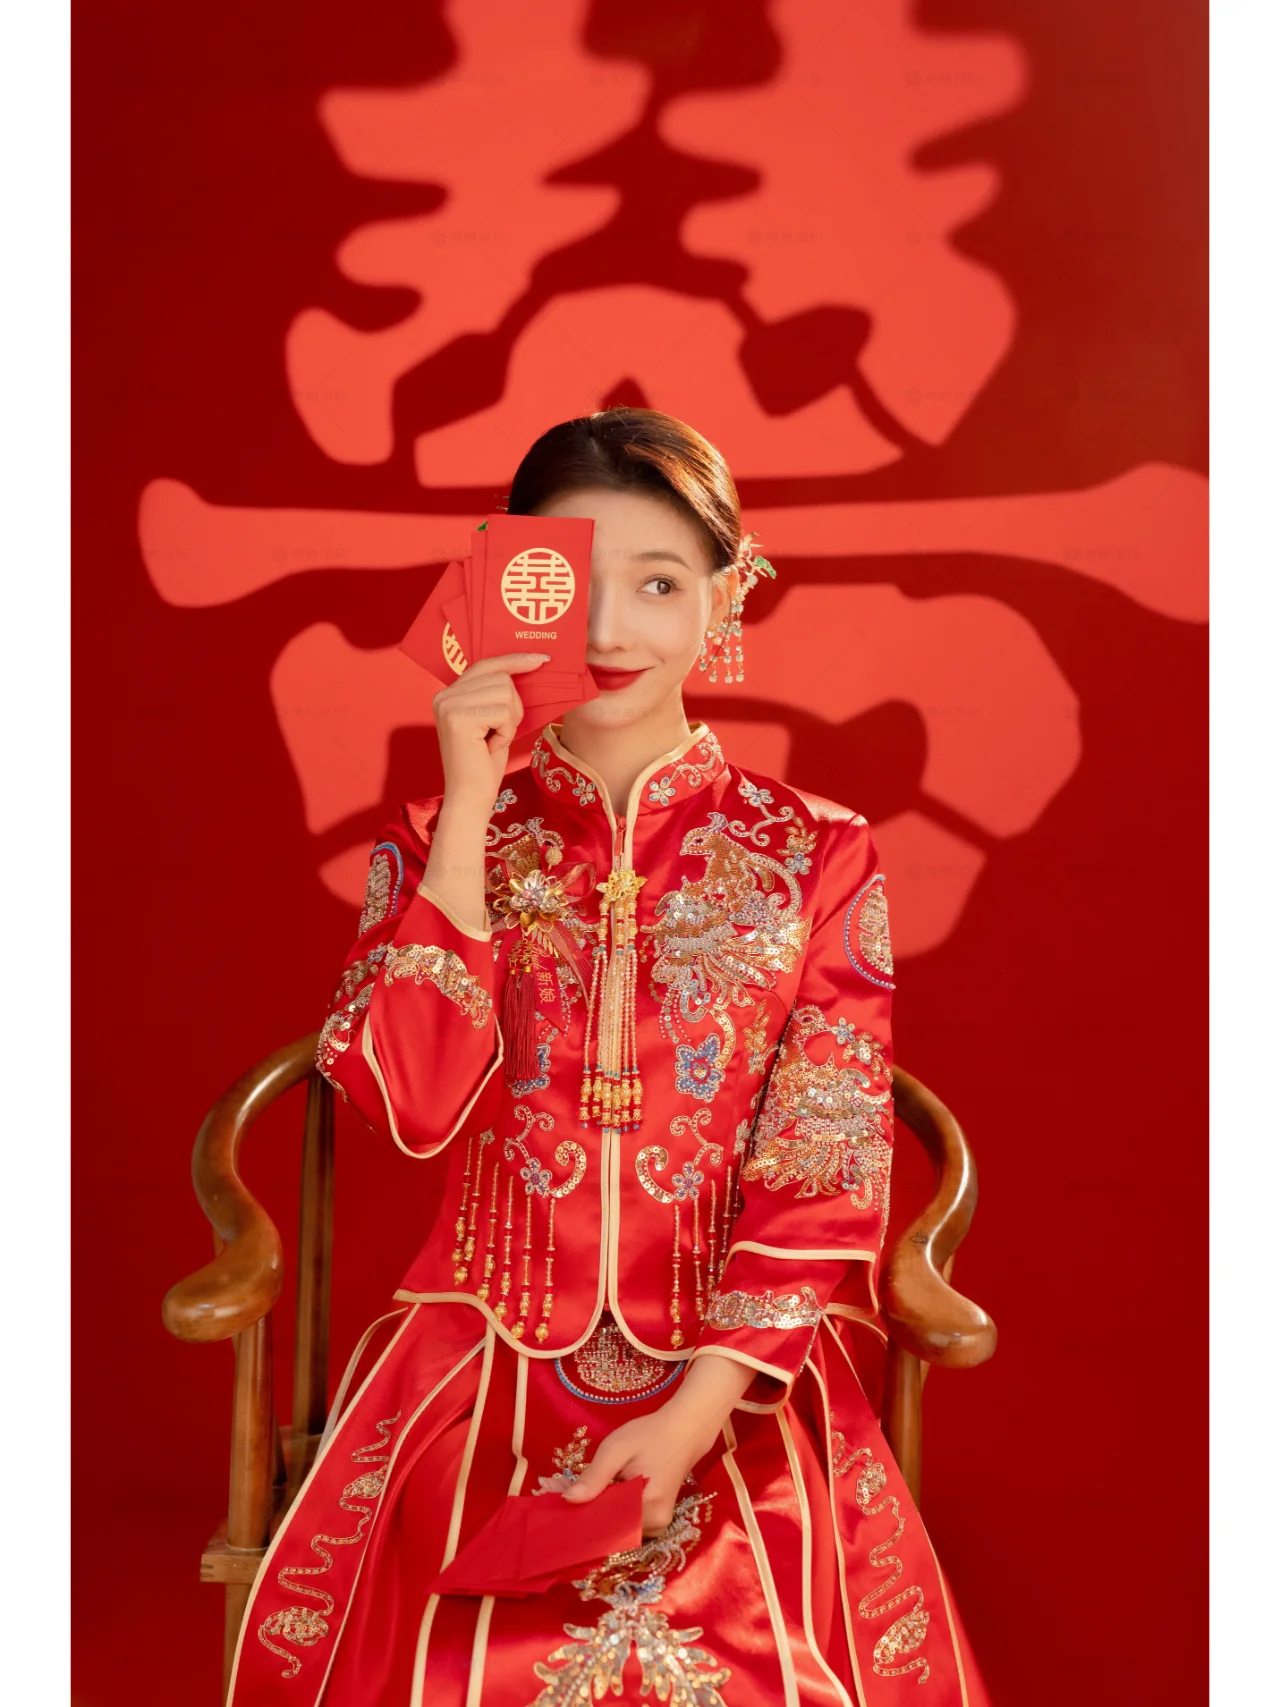 传统与浪漫，中式喜嫁婚纱照的魅力